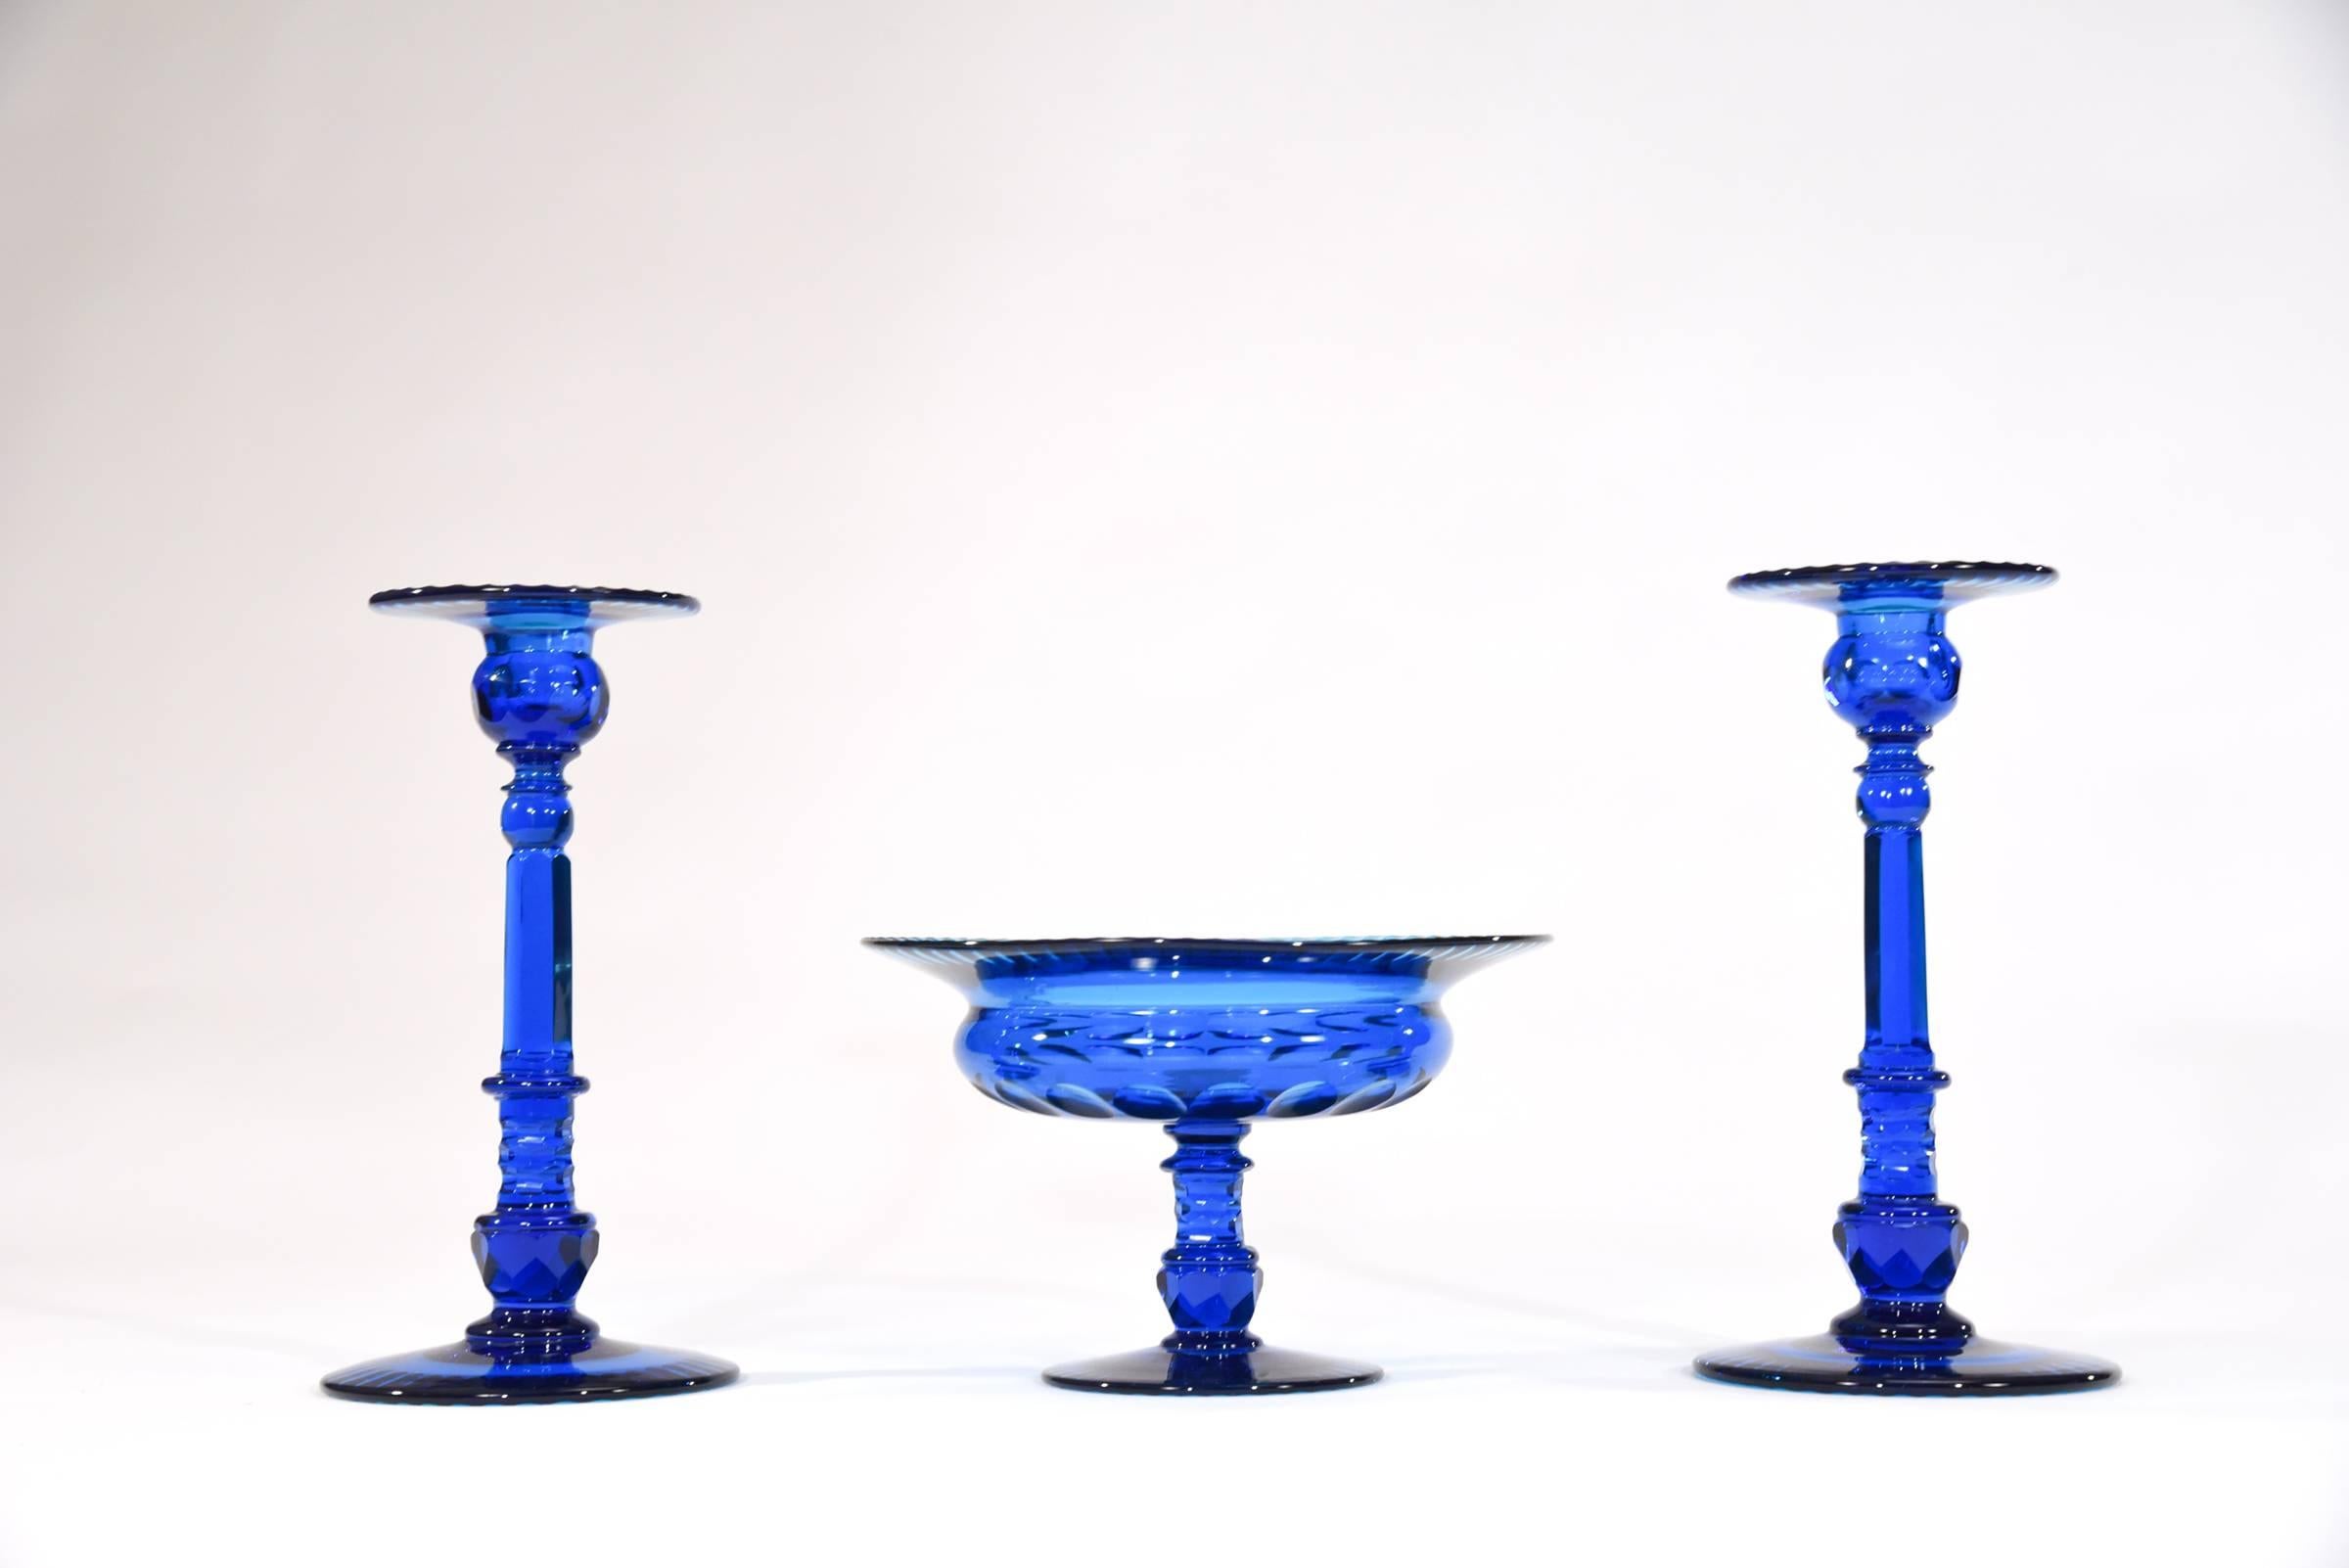 Il s'agit d'un grand et spectaculaire ensemble de centre de table fabriqué par Steuben à son apogée. Le riche bleu turquoise profond est le point focal parfait sur une table, un buffet ou dans une collection précieuse. Chaque pièce est en cristal